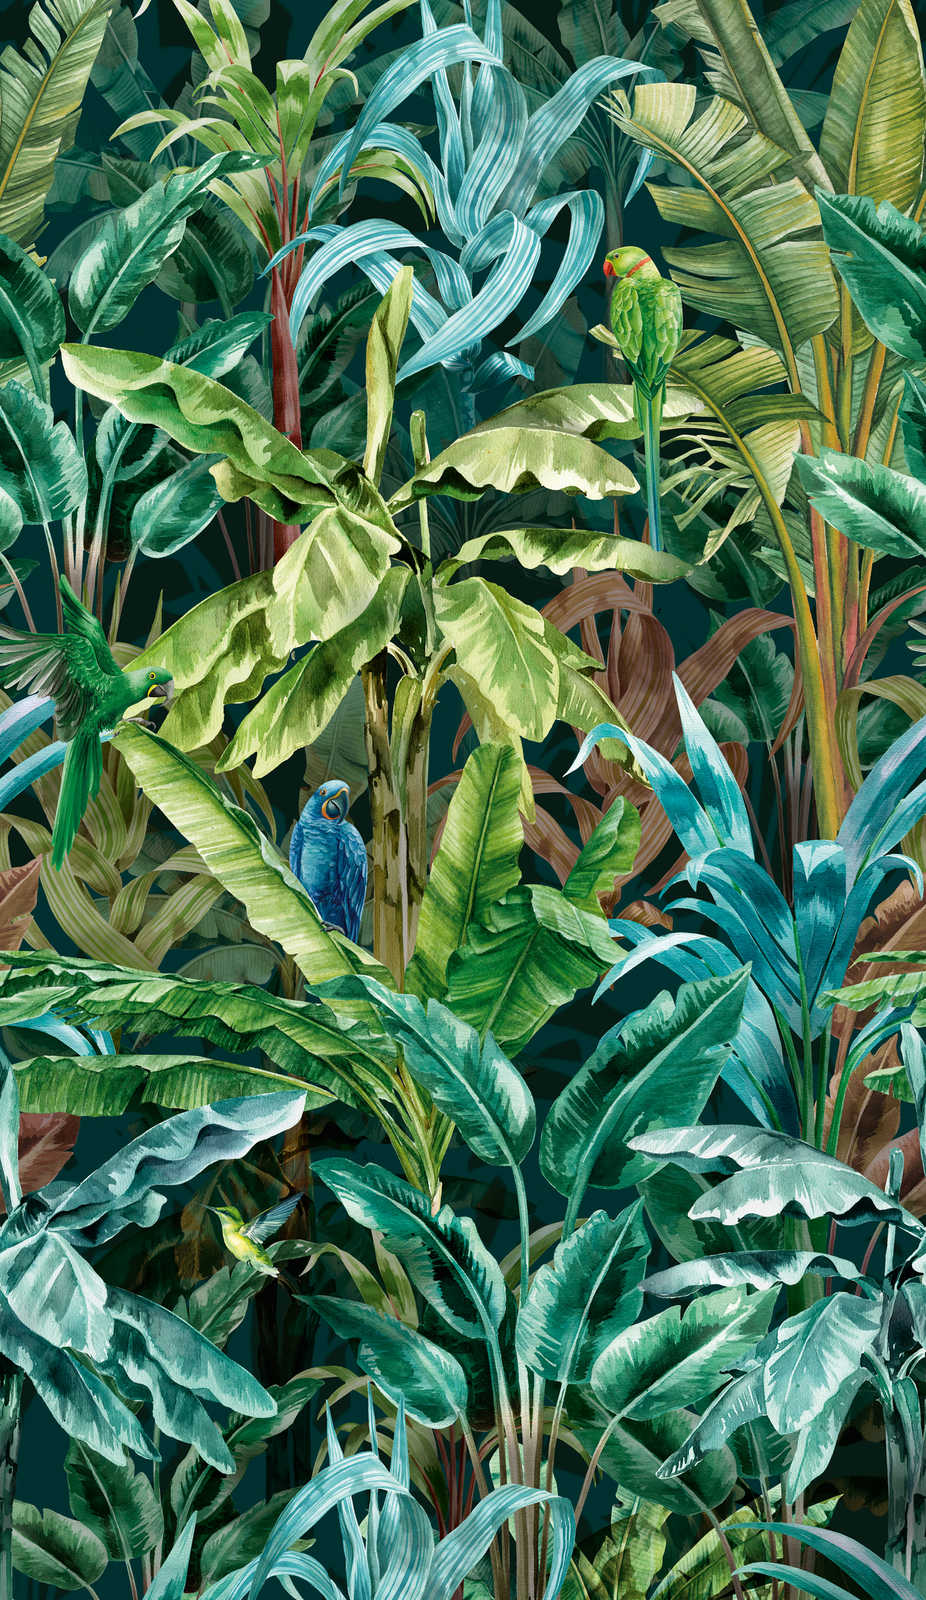             Vliestapete mit knalligem Dschungelmuster – Grün, Blau, Braun
        